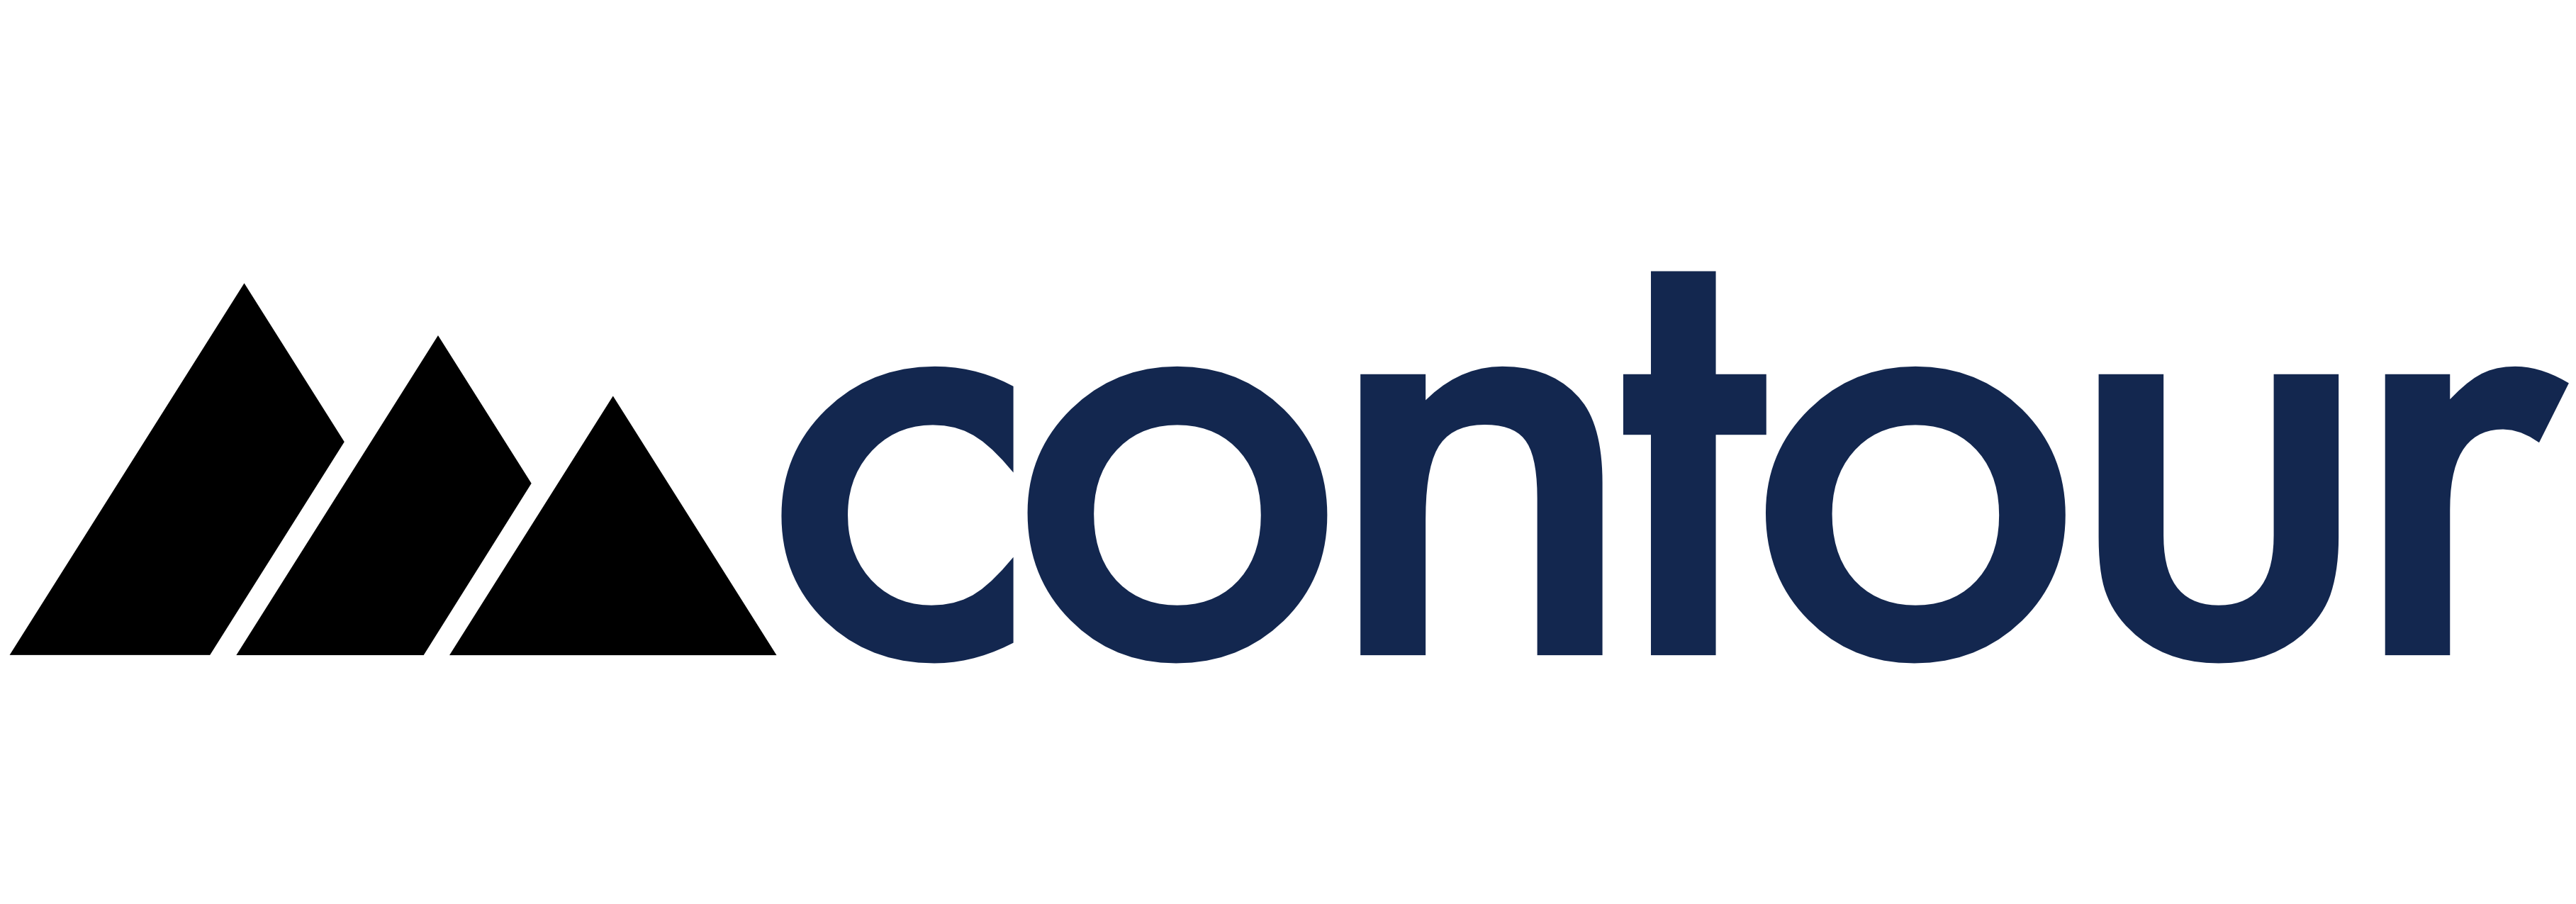 Contour Advisory logo - EDTX Partner